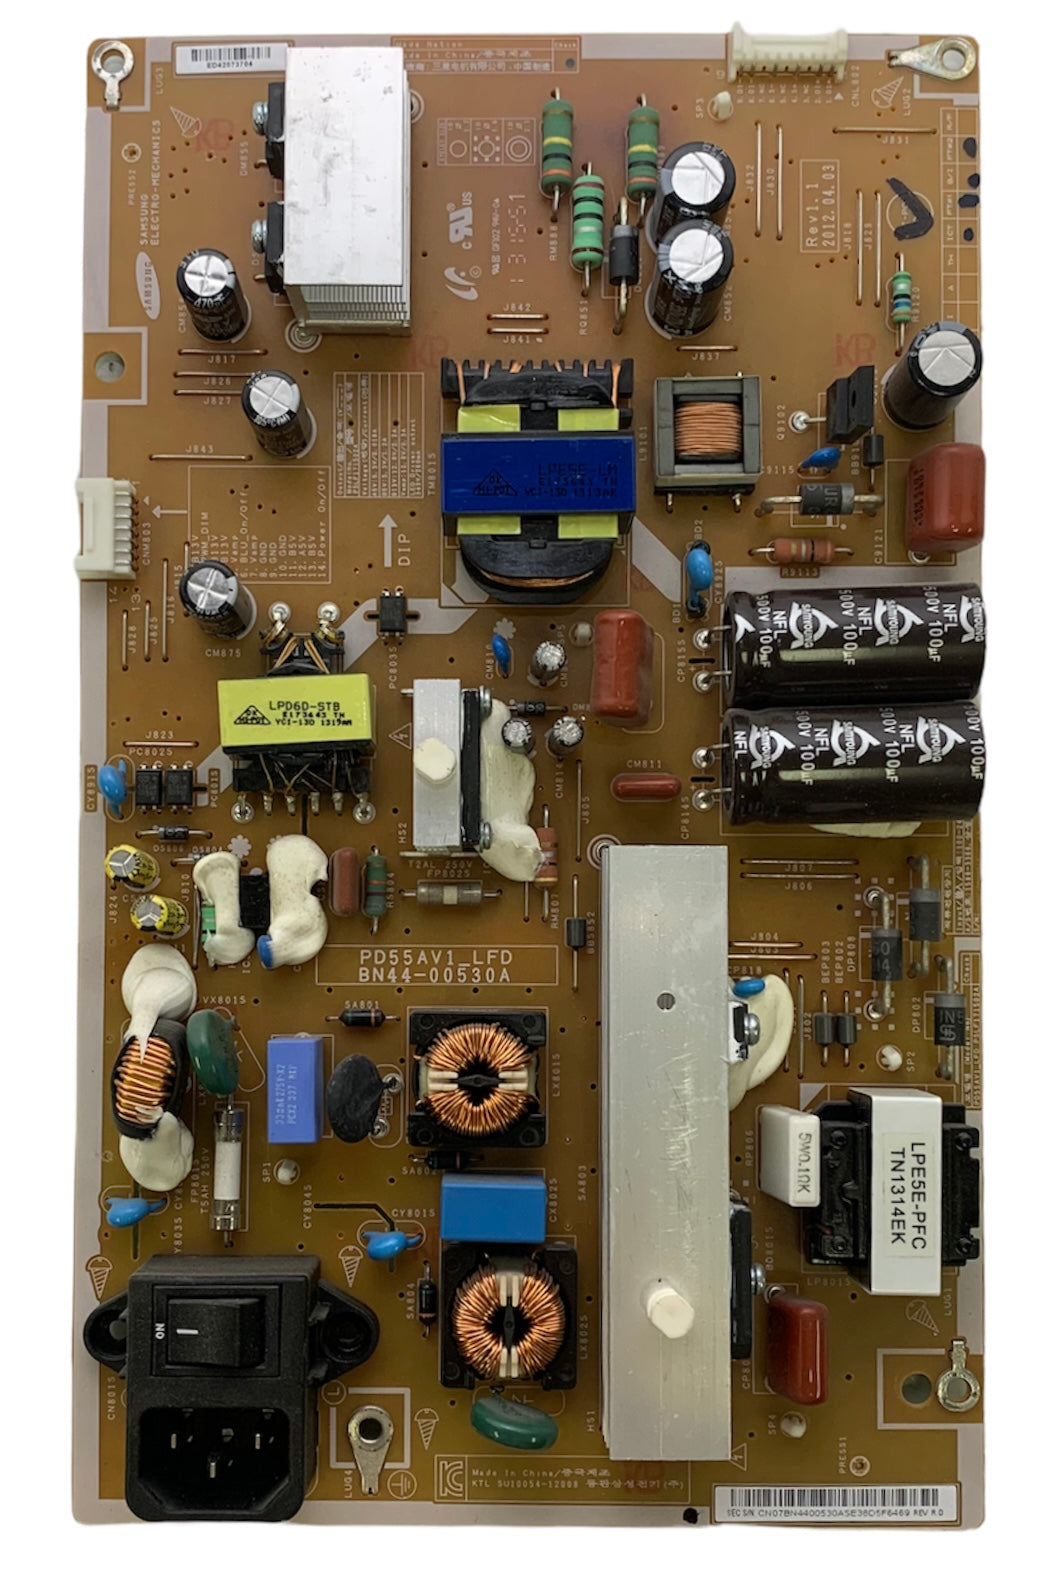 Samsung BN44-00530A (PD55AV_LFD) Power Supply / LED Board